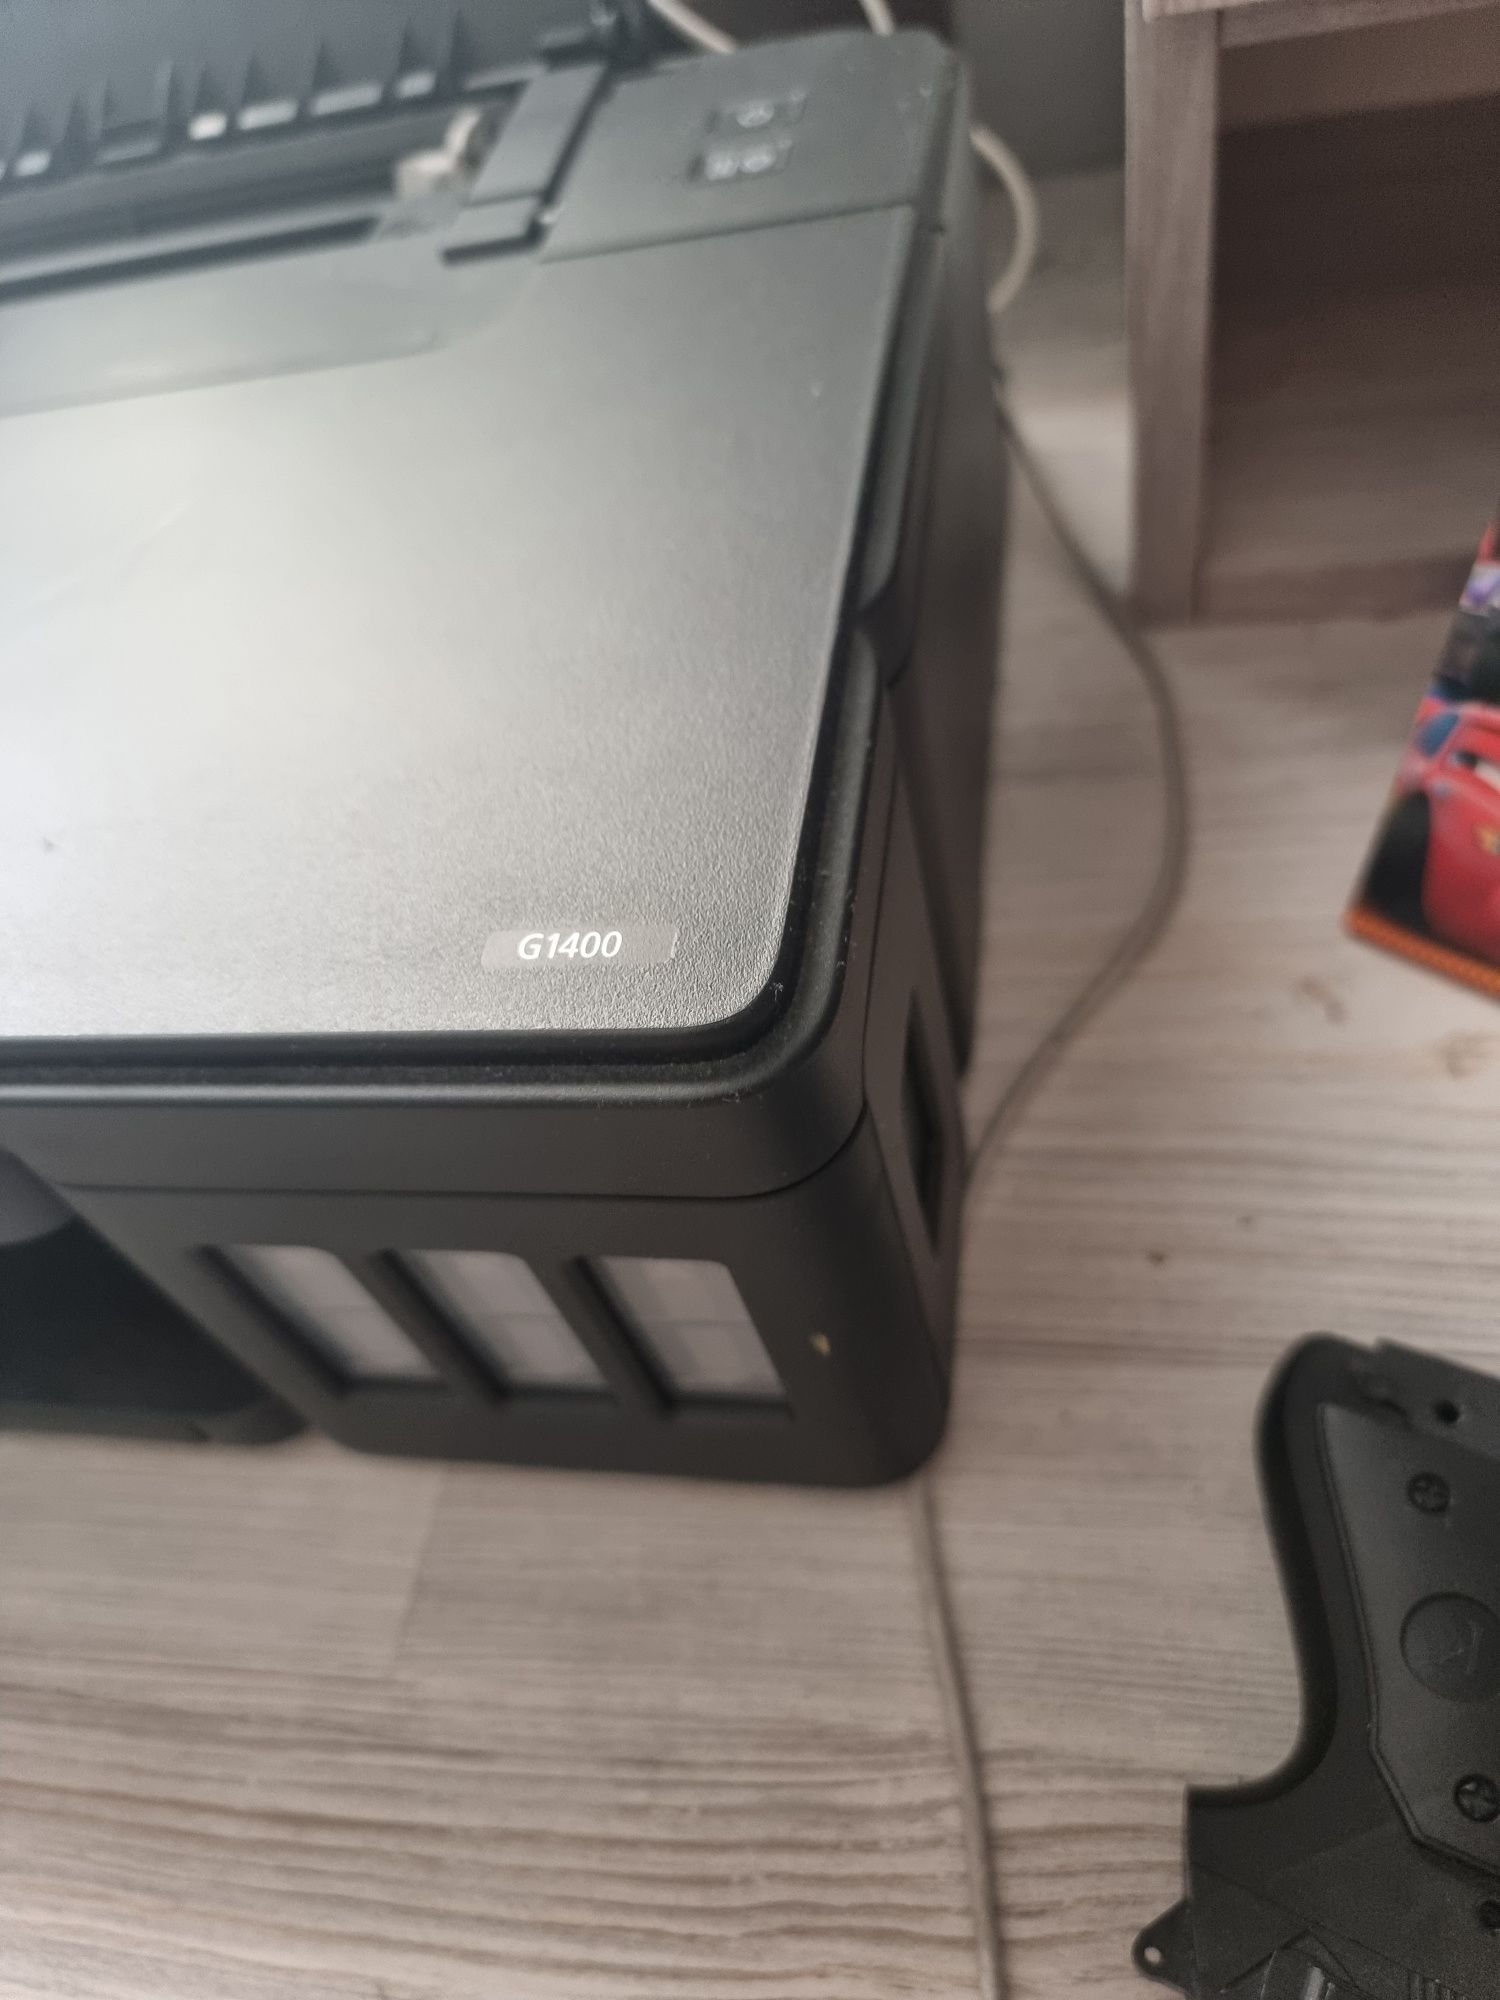 Продам принтер струйный CANON G1400